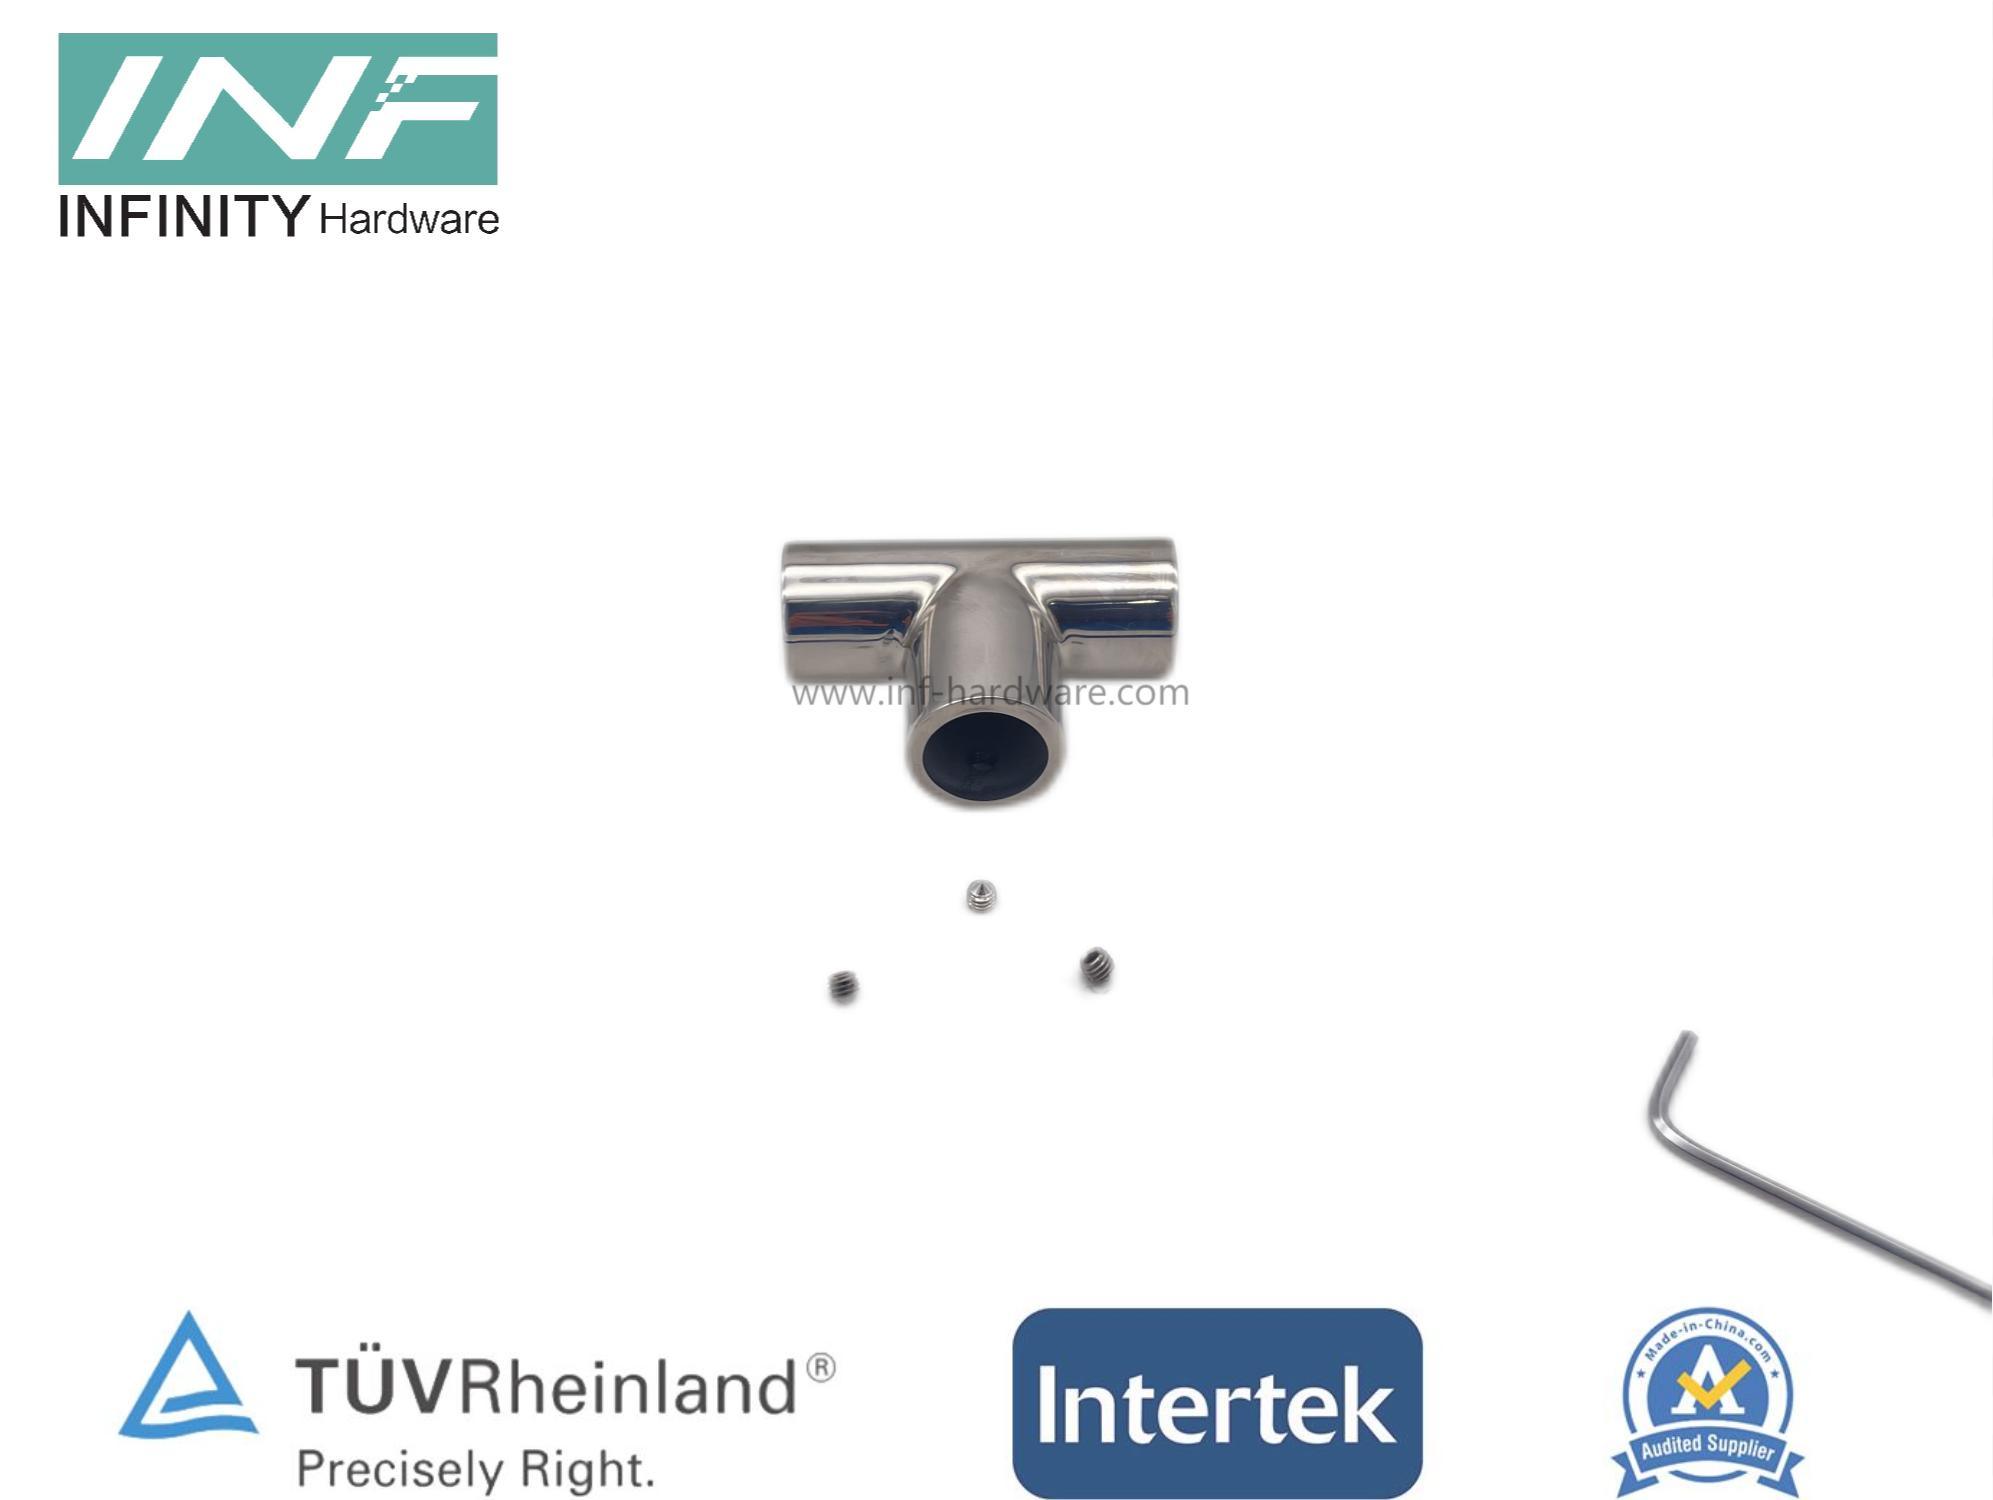 Conector de cinta T de tubo a tubo de 3 vías de latón y acero inoxidable para montaje de vidrio con función ajustable